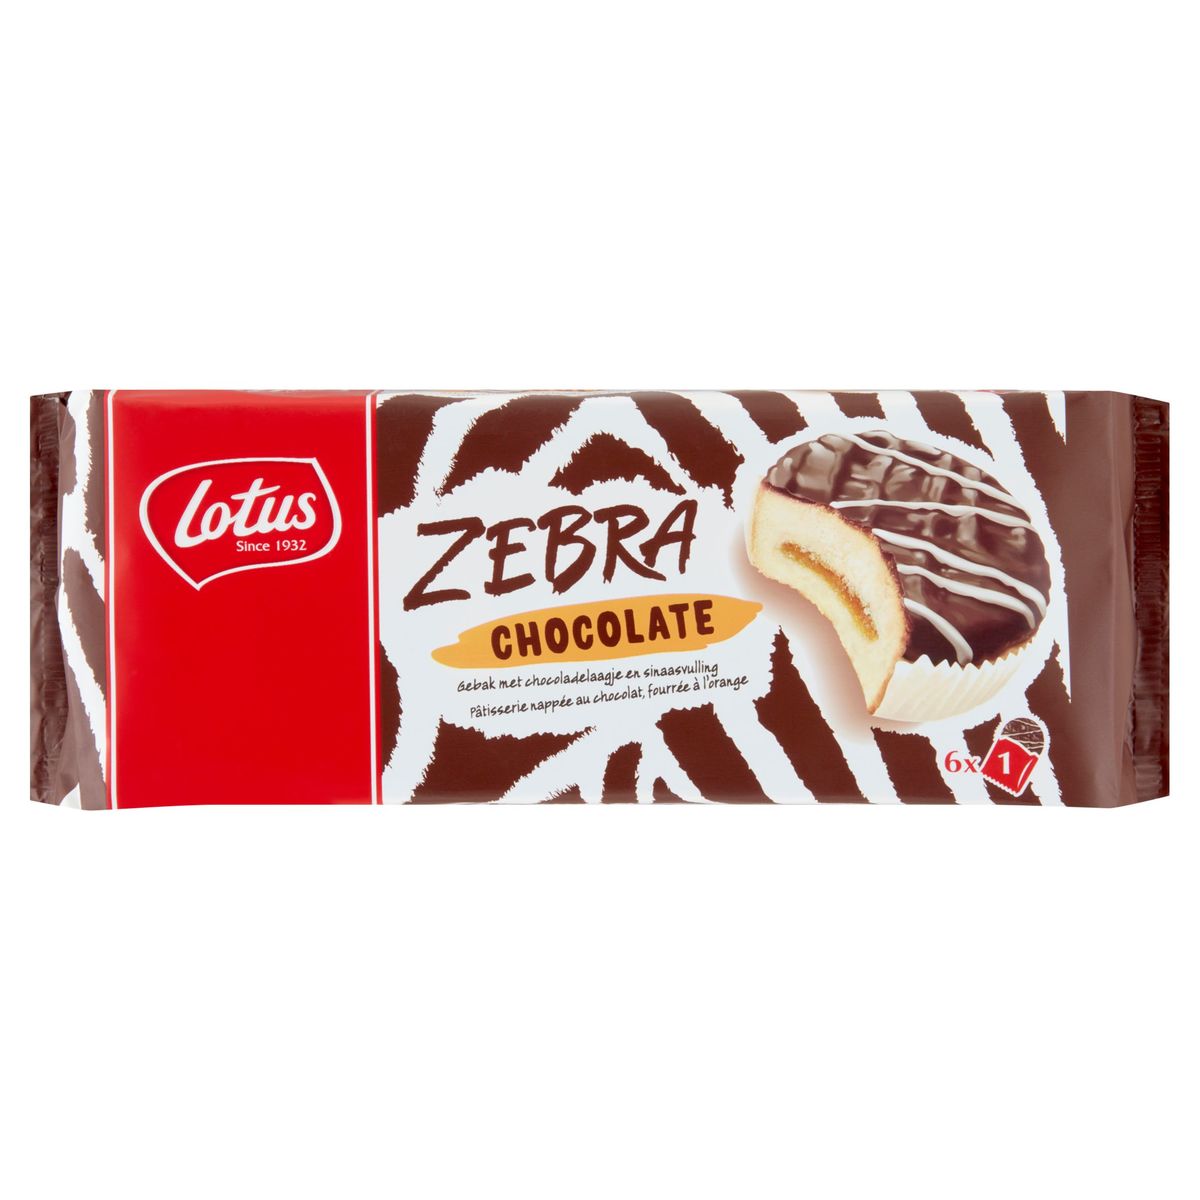 Lotus Zebra Chocolate met Chocoladelaagje en Sinaasvulling 6 x 38.5 g